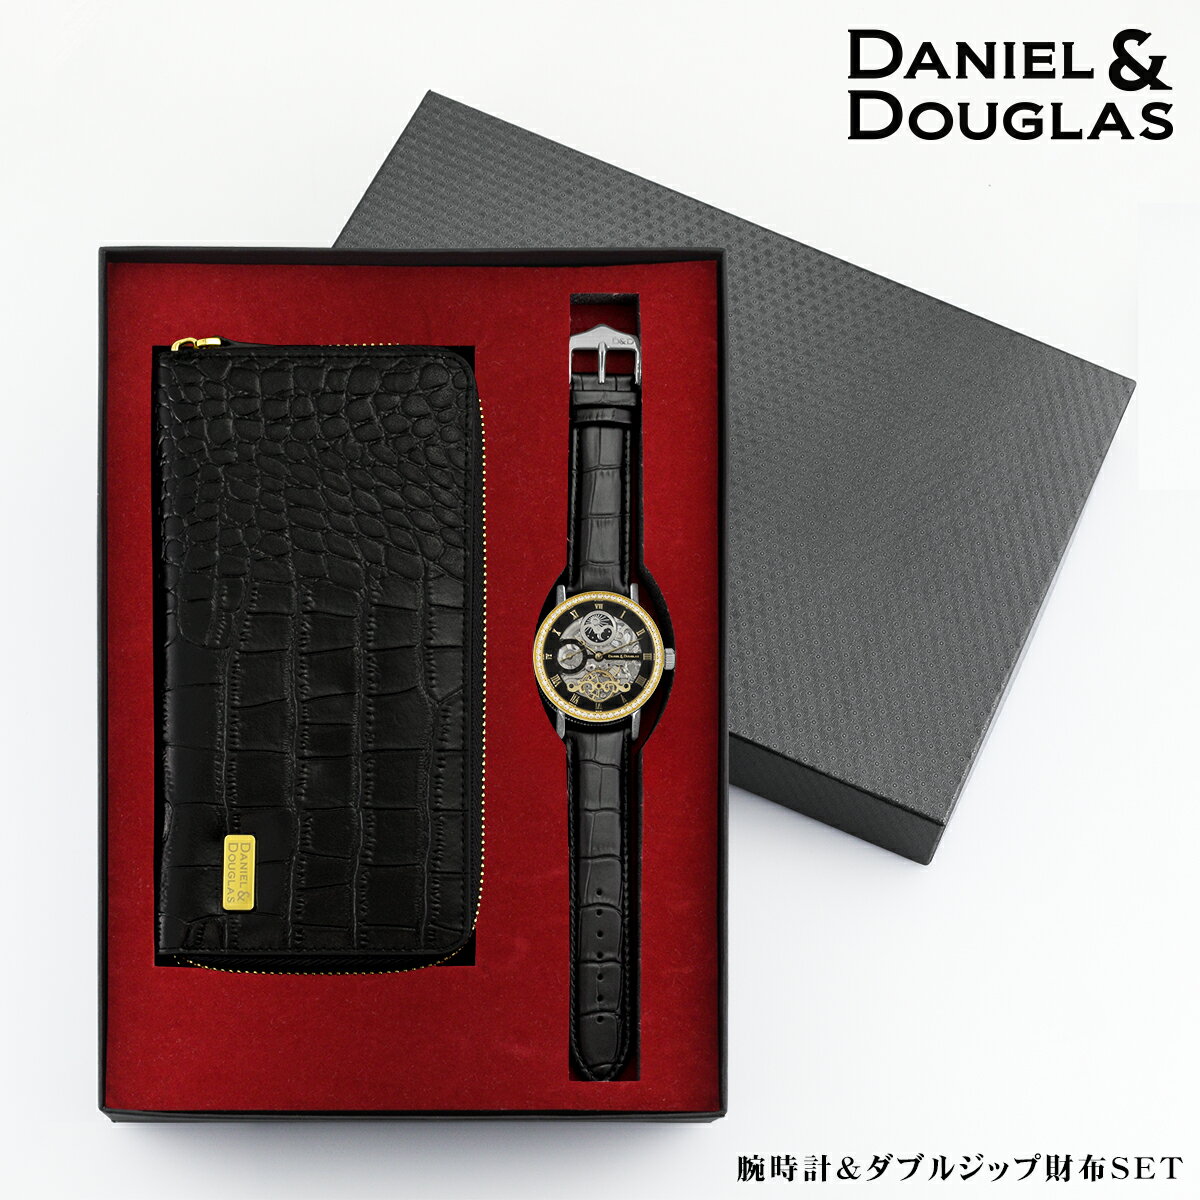 ダニエルアンドダグラス 腕時計 長財布 セット メンズ 父の日 機械式 自動巻 オートマチック DANIEL&DOUGLAS シルバー ゴールド ブラック ダイヤモンド ダブルジップ クロコダイル型 レザー 高級 プレゼント